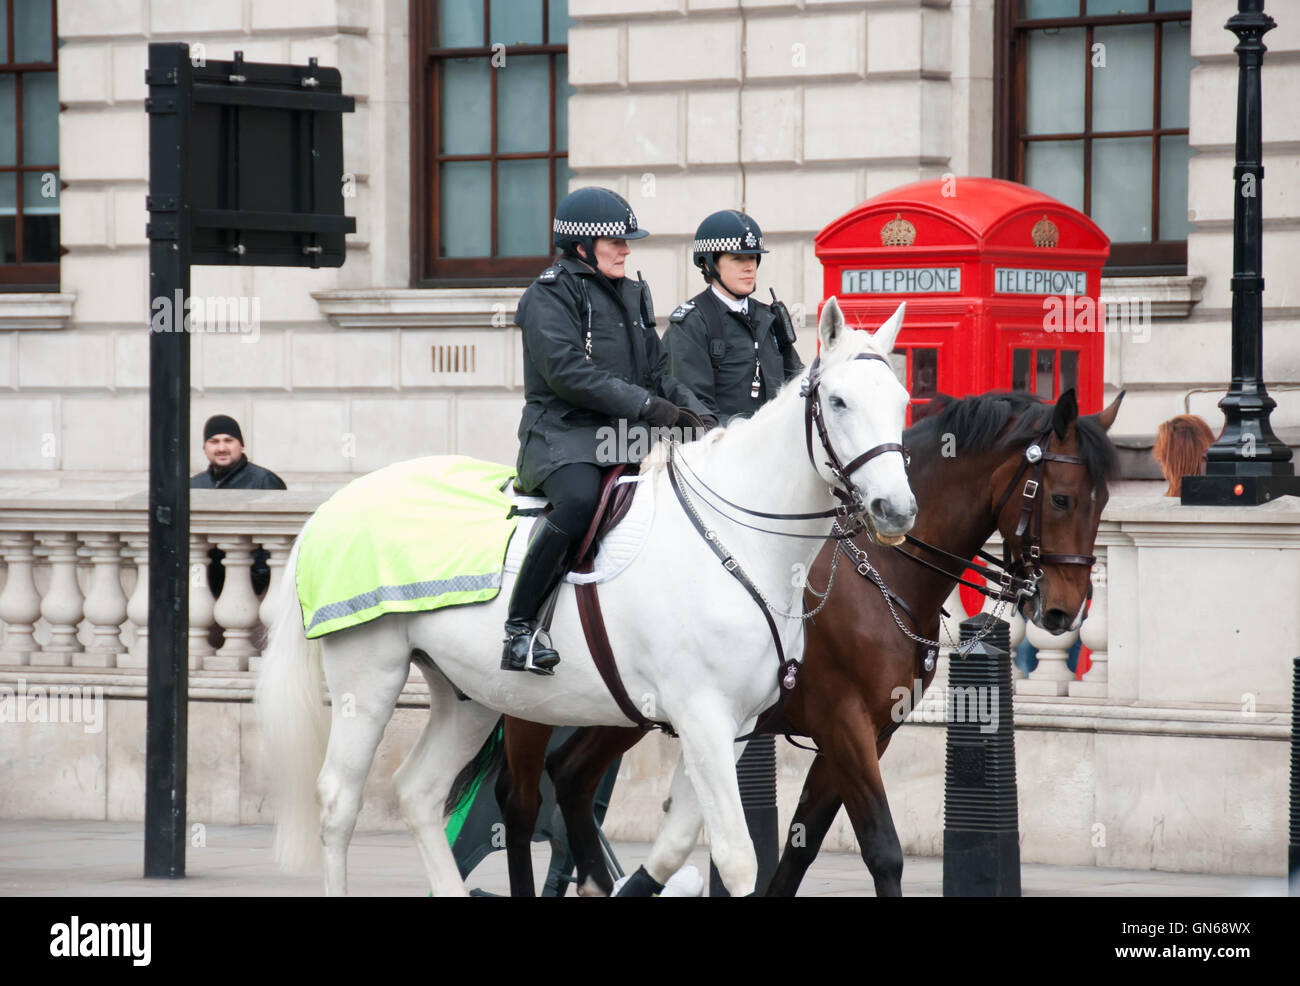 London, England. 06 März 2016. Zwei Symbole von London. Wachmänner zu Pferd und die traditionelle rote Telefonzelle. Stockfoto